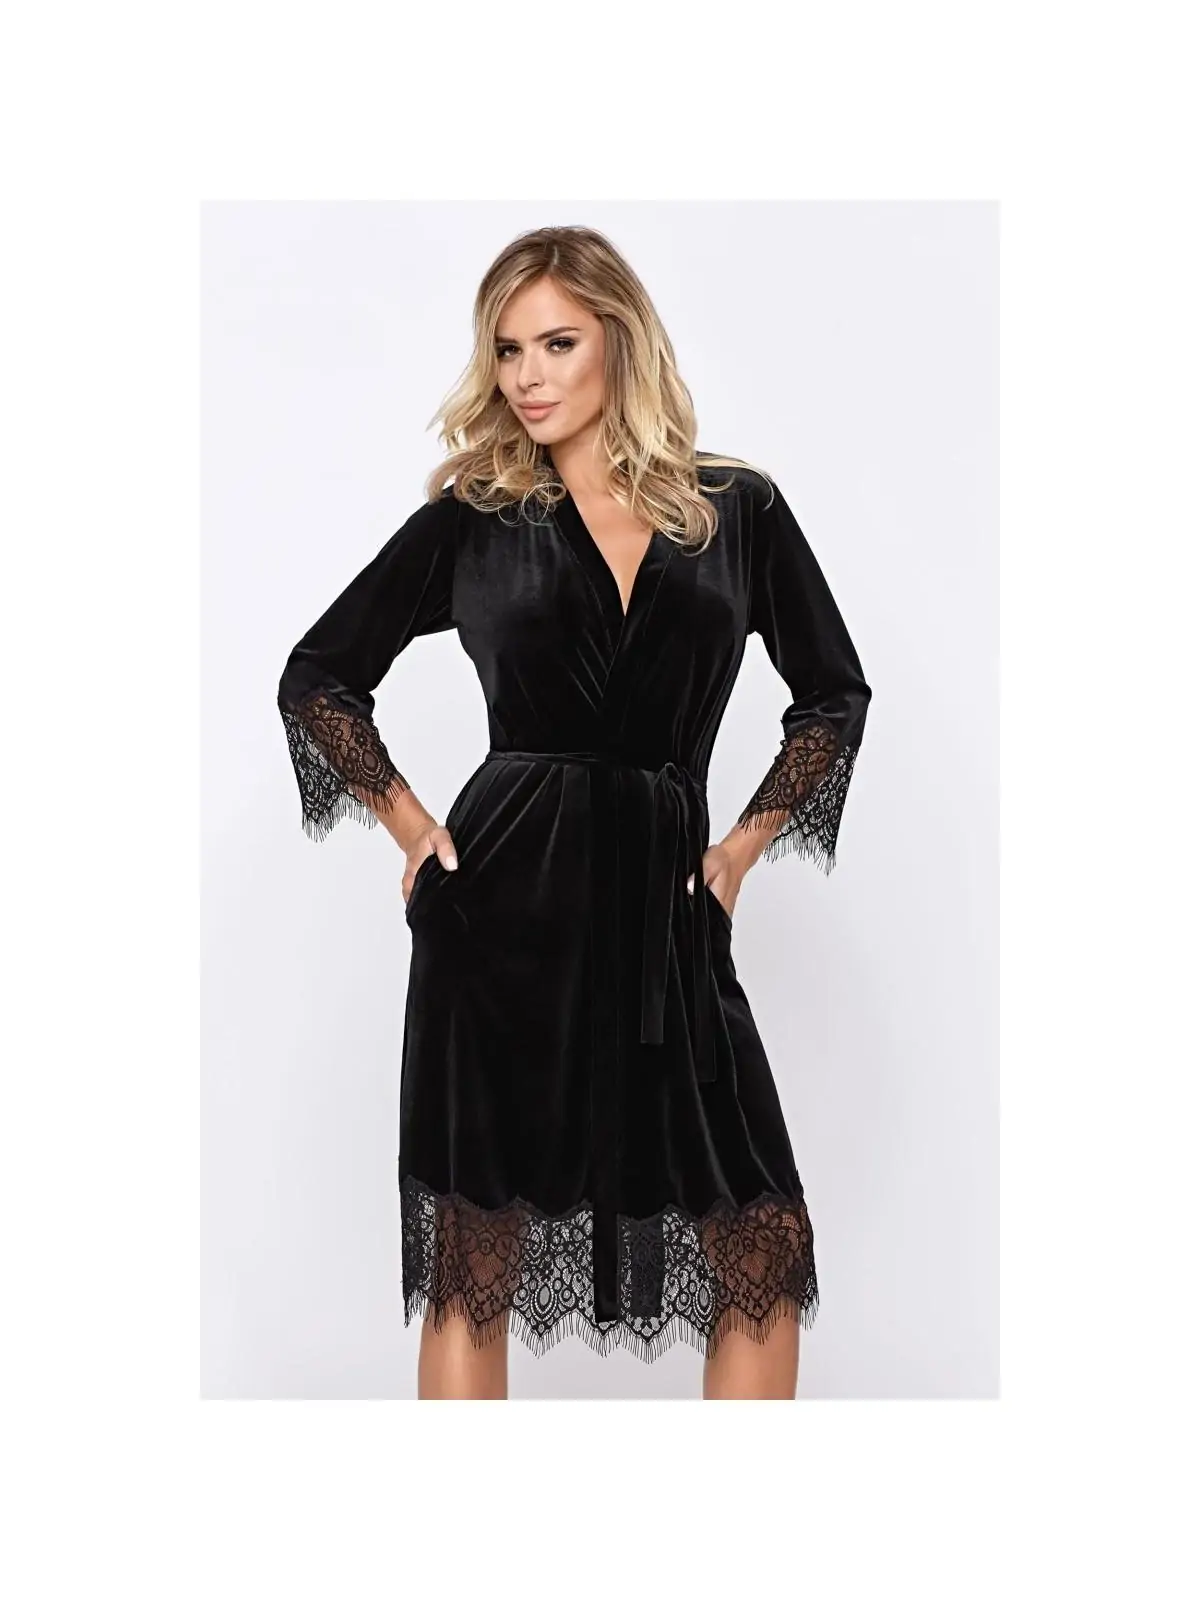 Schwarzes Mia Dressing Gown von Hamana kaufen - Fesselliebe